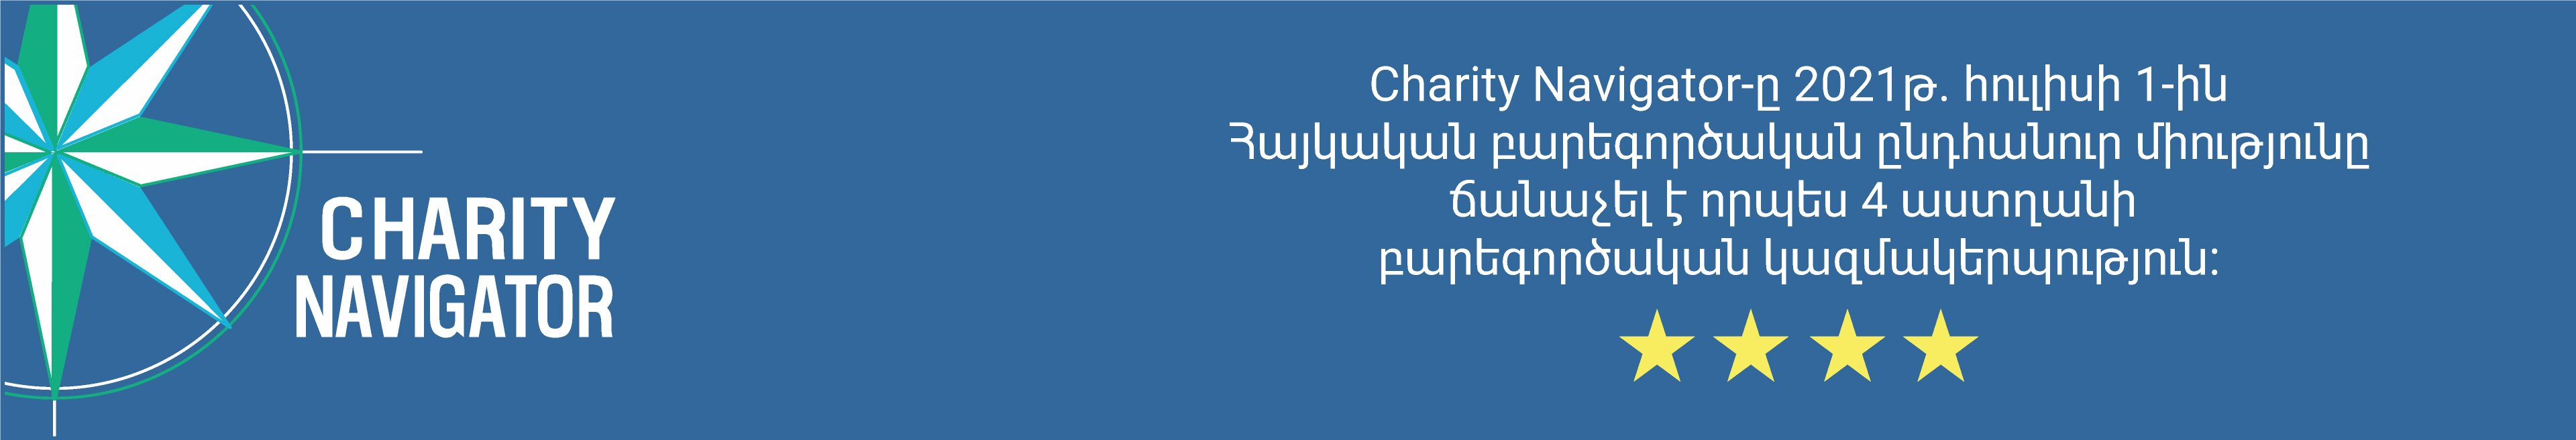 Charity Navigator-ը 2021թ. հուլիսի 1-ին Հայկական բարեգործական ընդհանուր միությունը ճանաչել է որպես 4 աստղանի  բարեգործական կազմակերպություն: